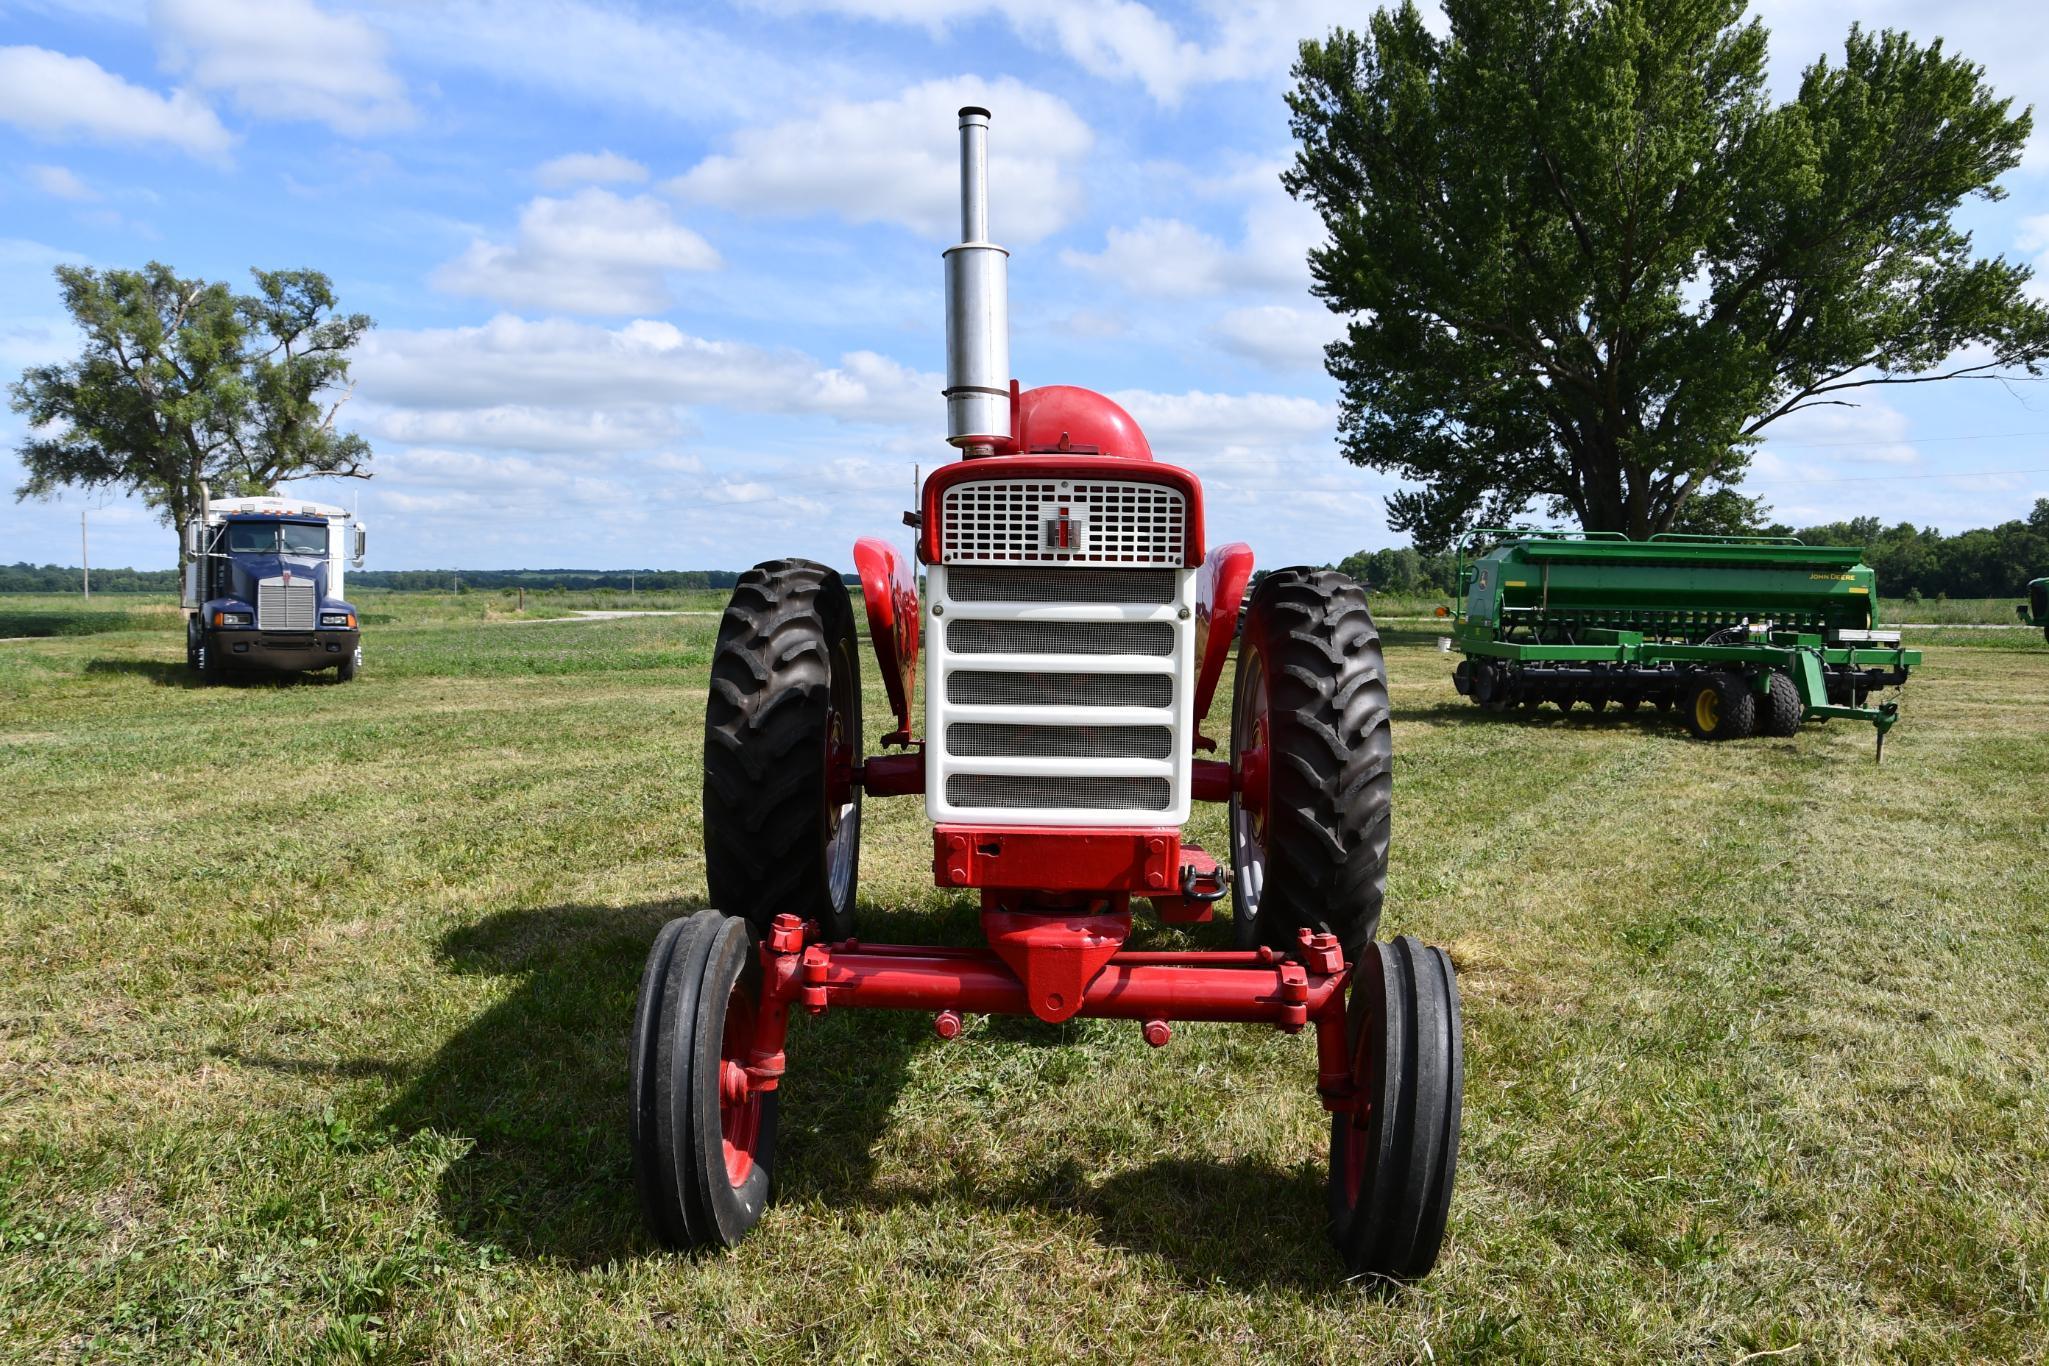 1962 Farmall 560 2wd tractor